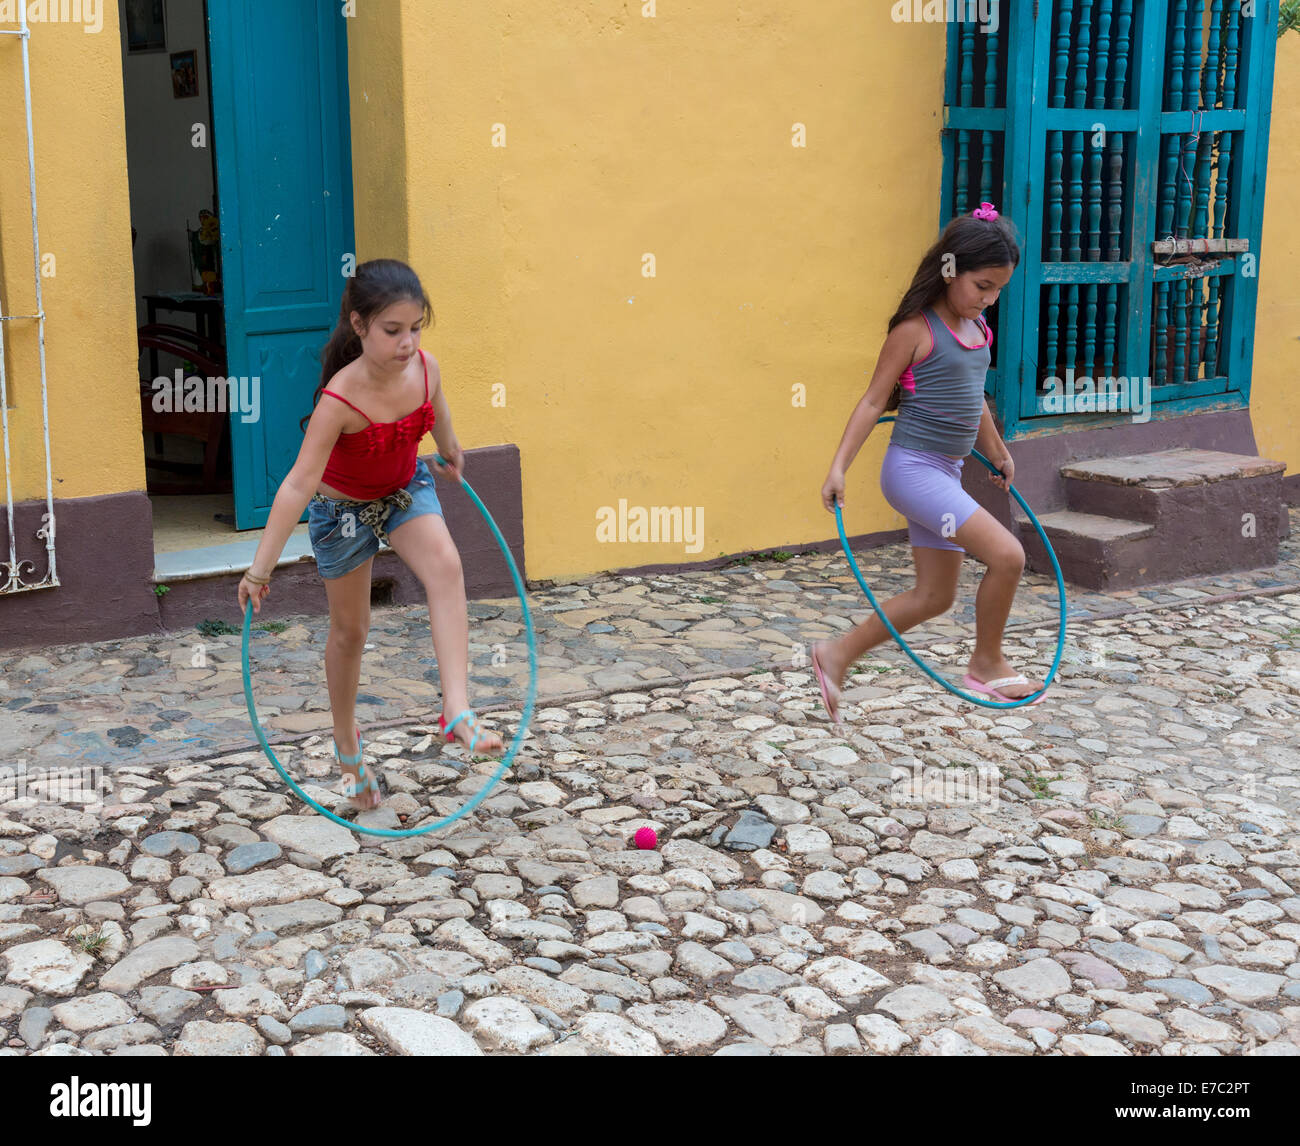 Las niñas jugando con el hula hoop, Trinidad, Cuba Foto de stock